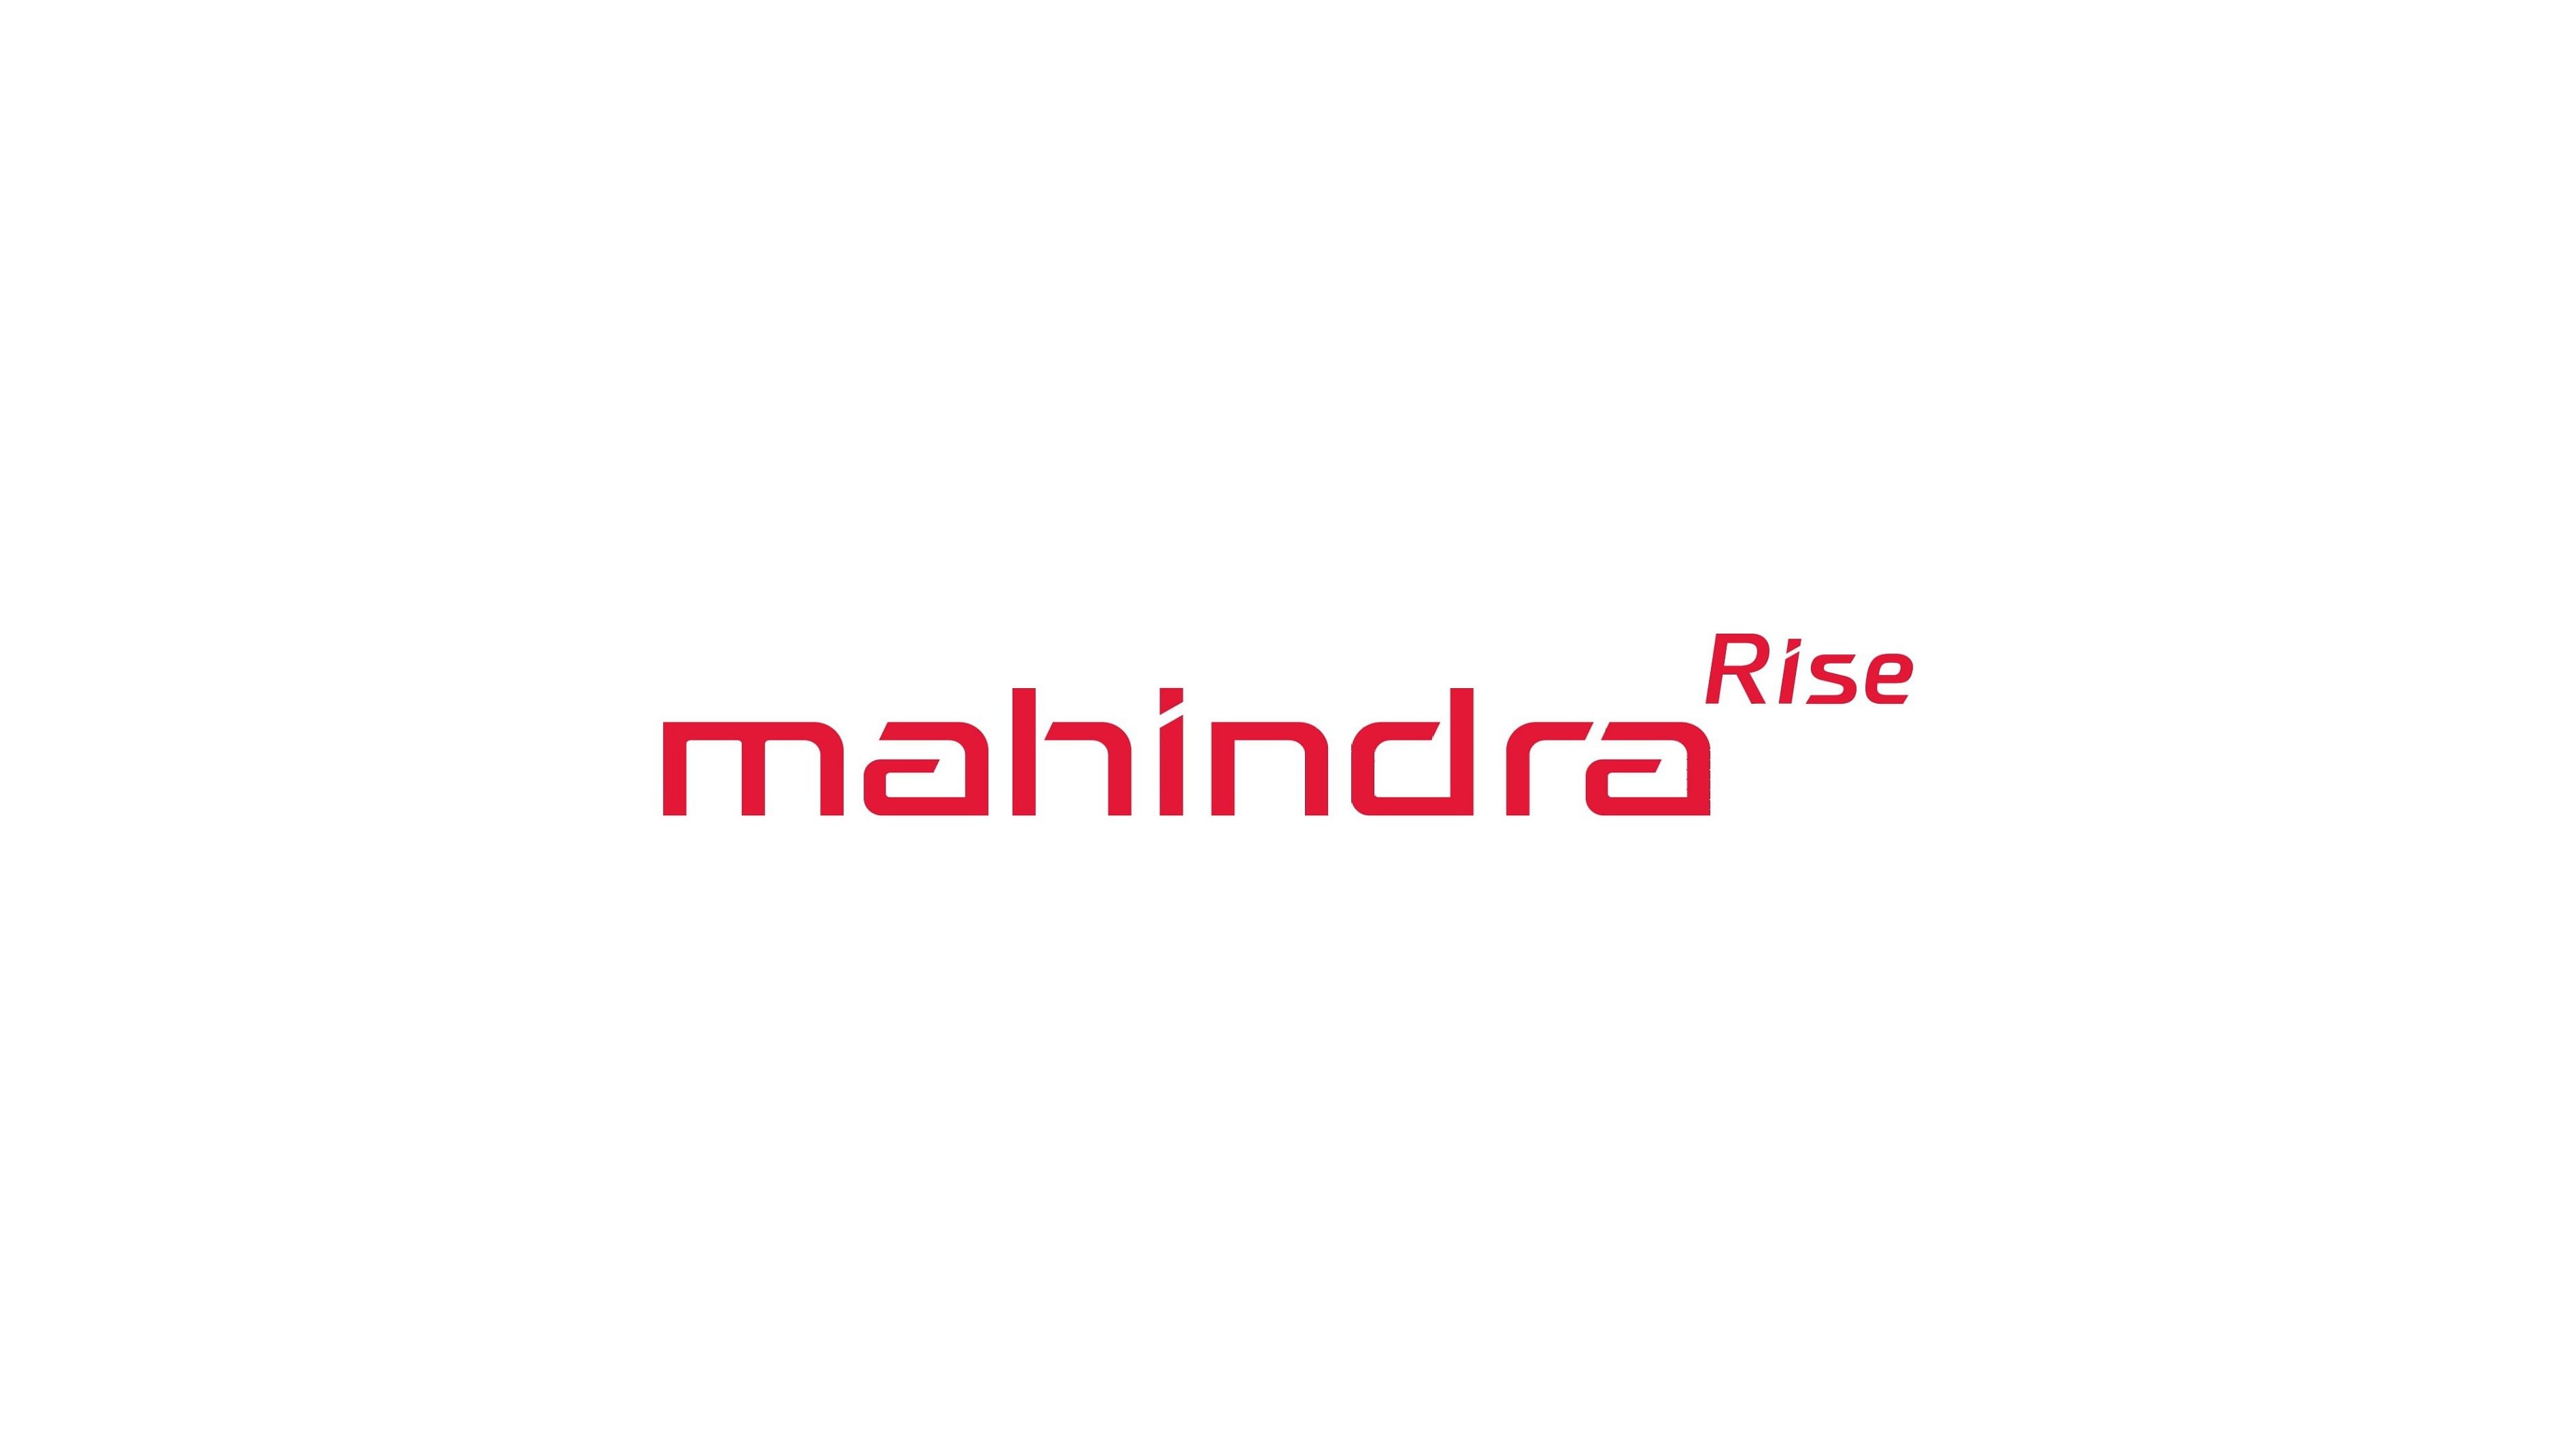 Mahindra logo HD wallpapers | Pxfuel